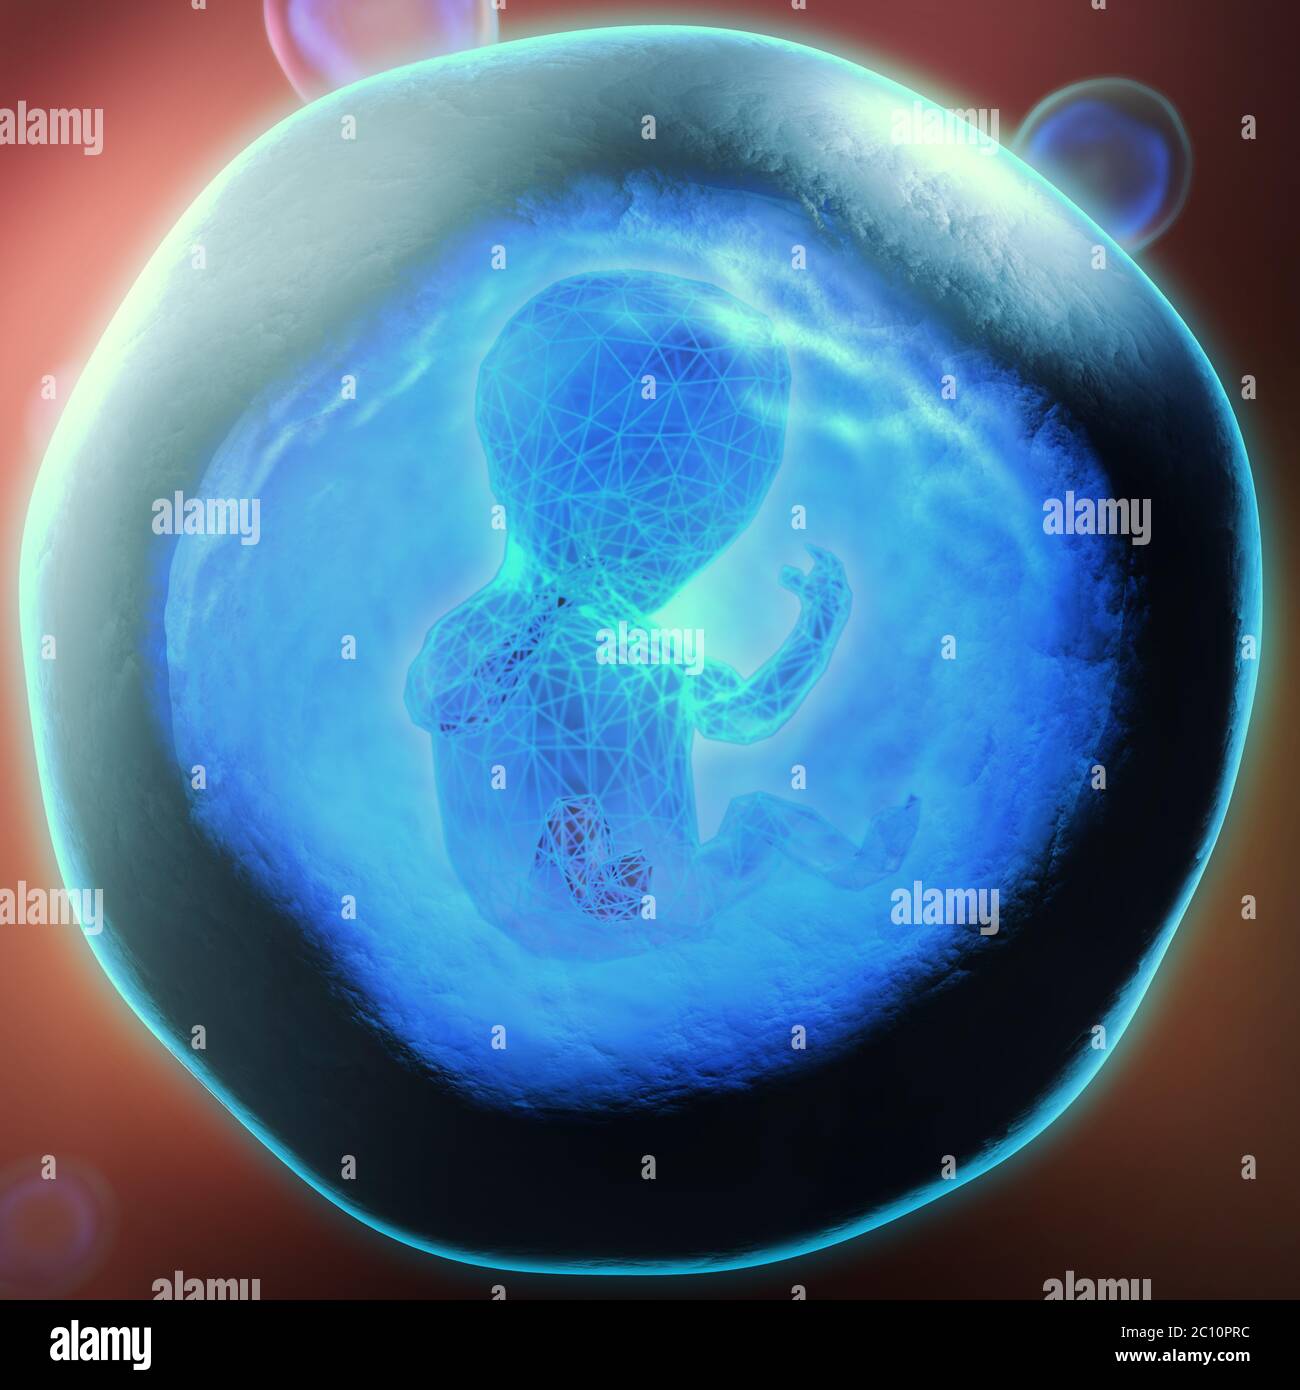 3d illustration d'un embryon génétiquement modifié piégés dans une bulle transparente bleu Banque D'Images